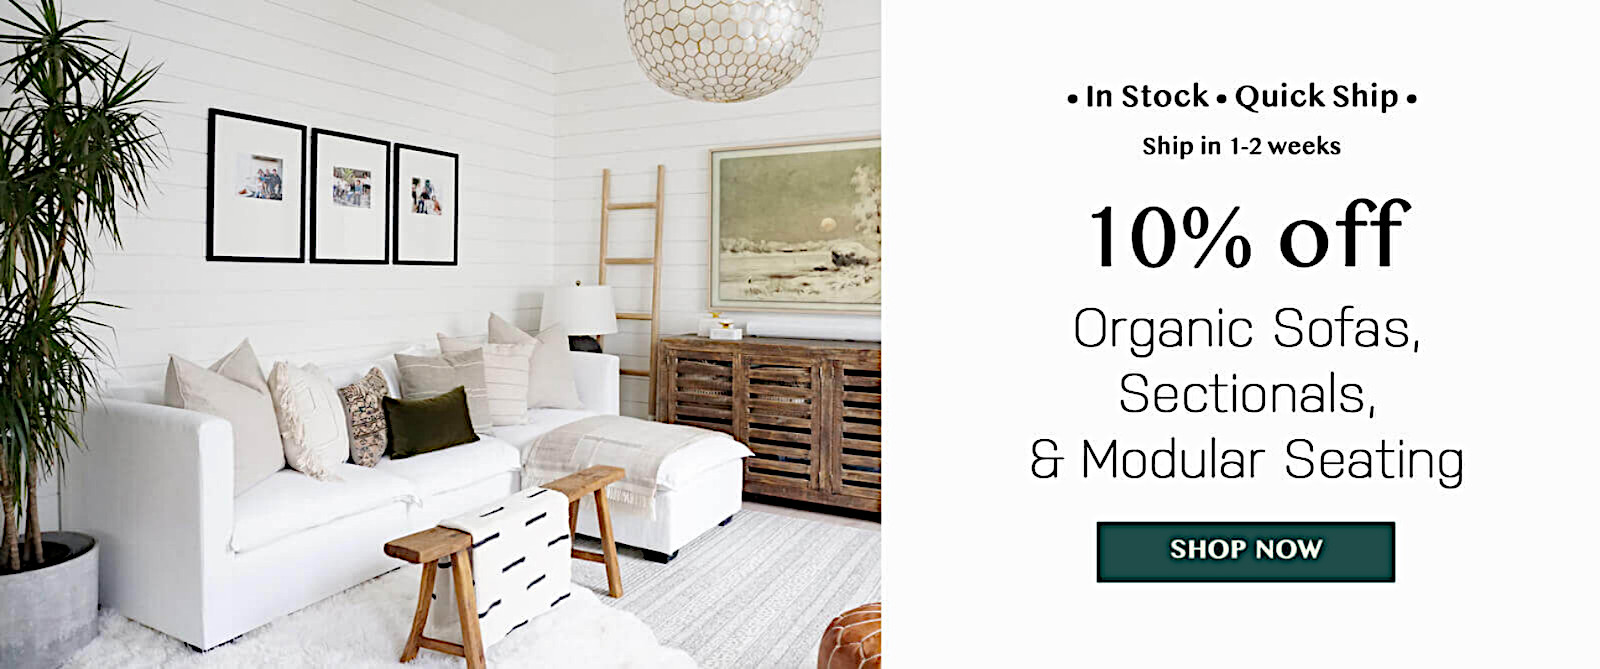 Low price organic sofas sectionals modular seating